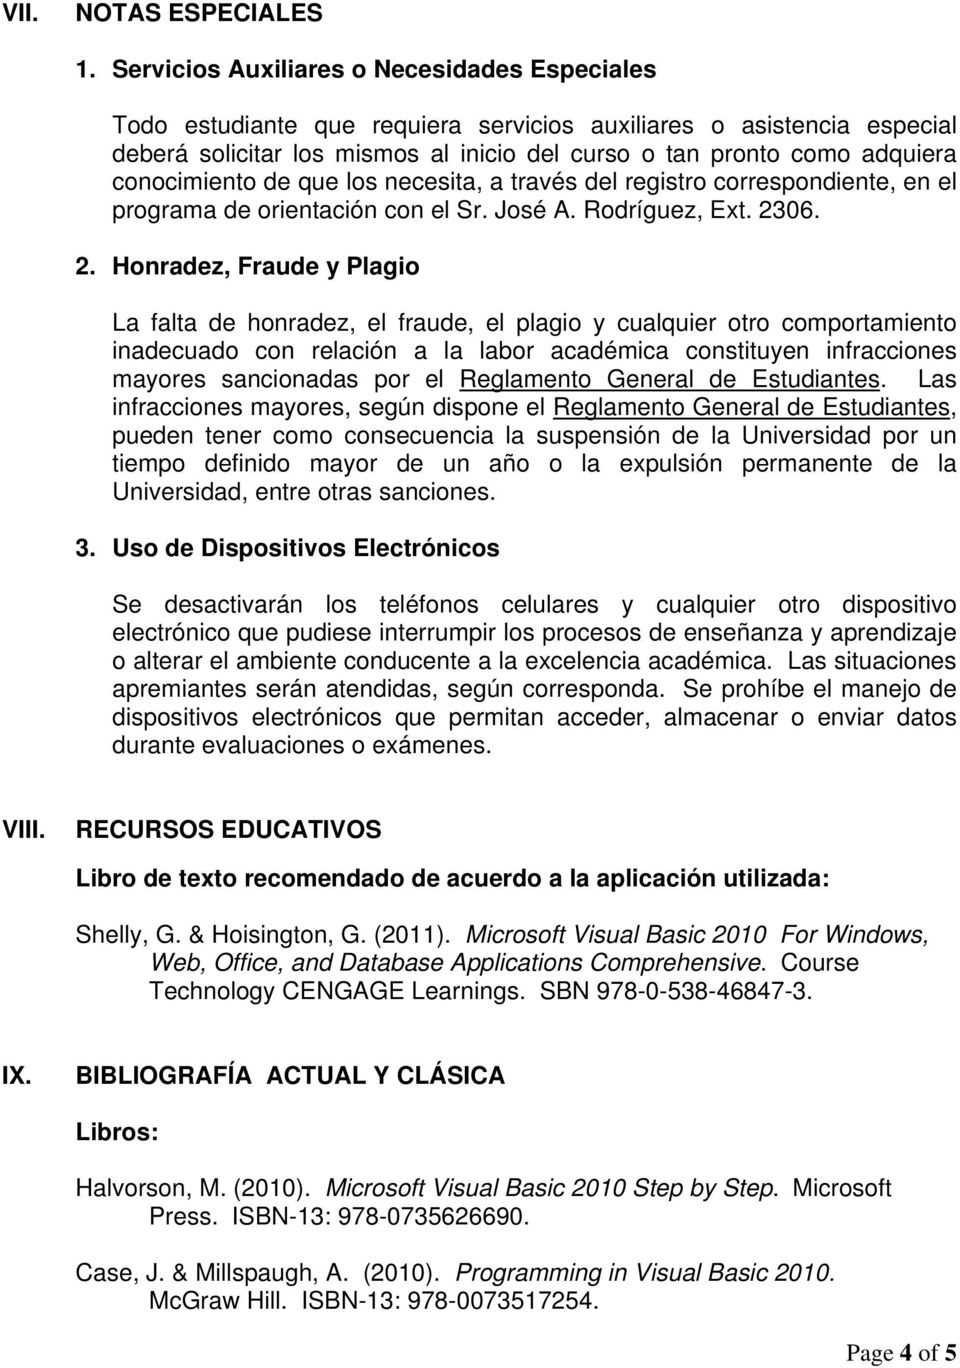 conocimiento de que los necesita, a través del registro correspondiente, en el programa de orientación con el Sr. José A. Rodríguez, Ext. 23